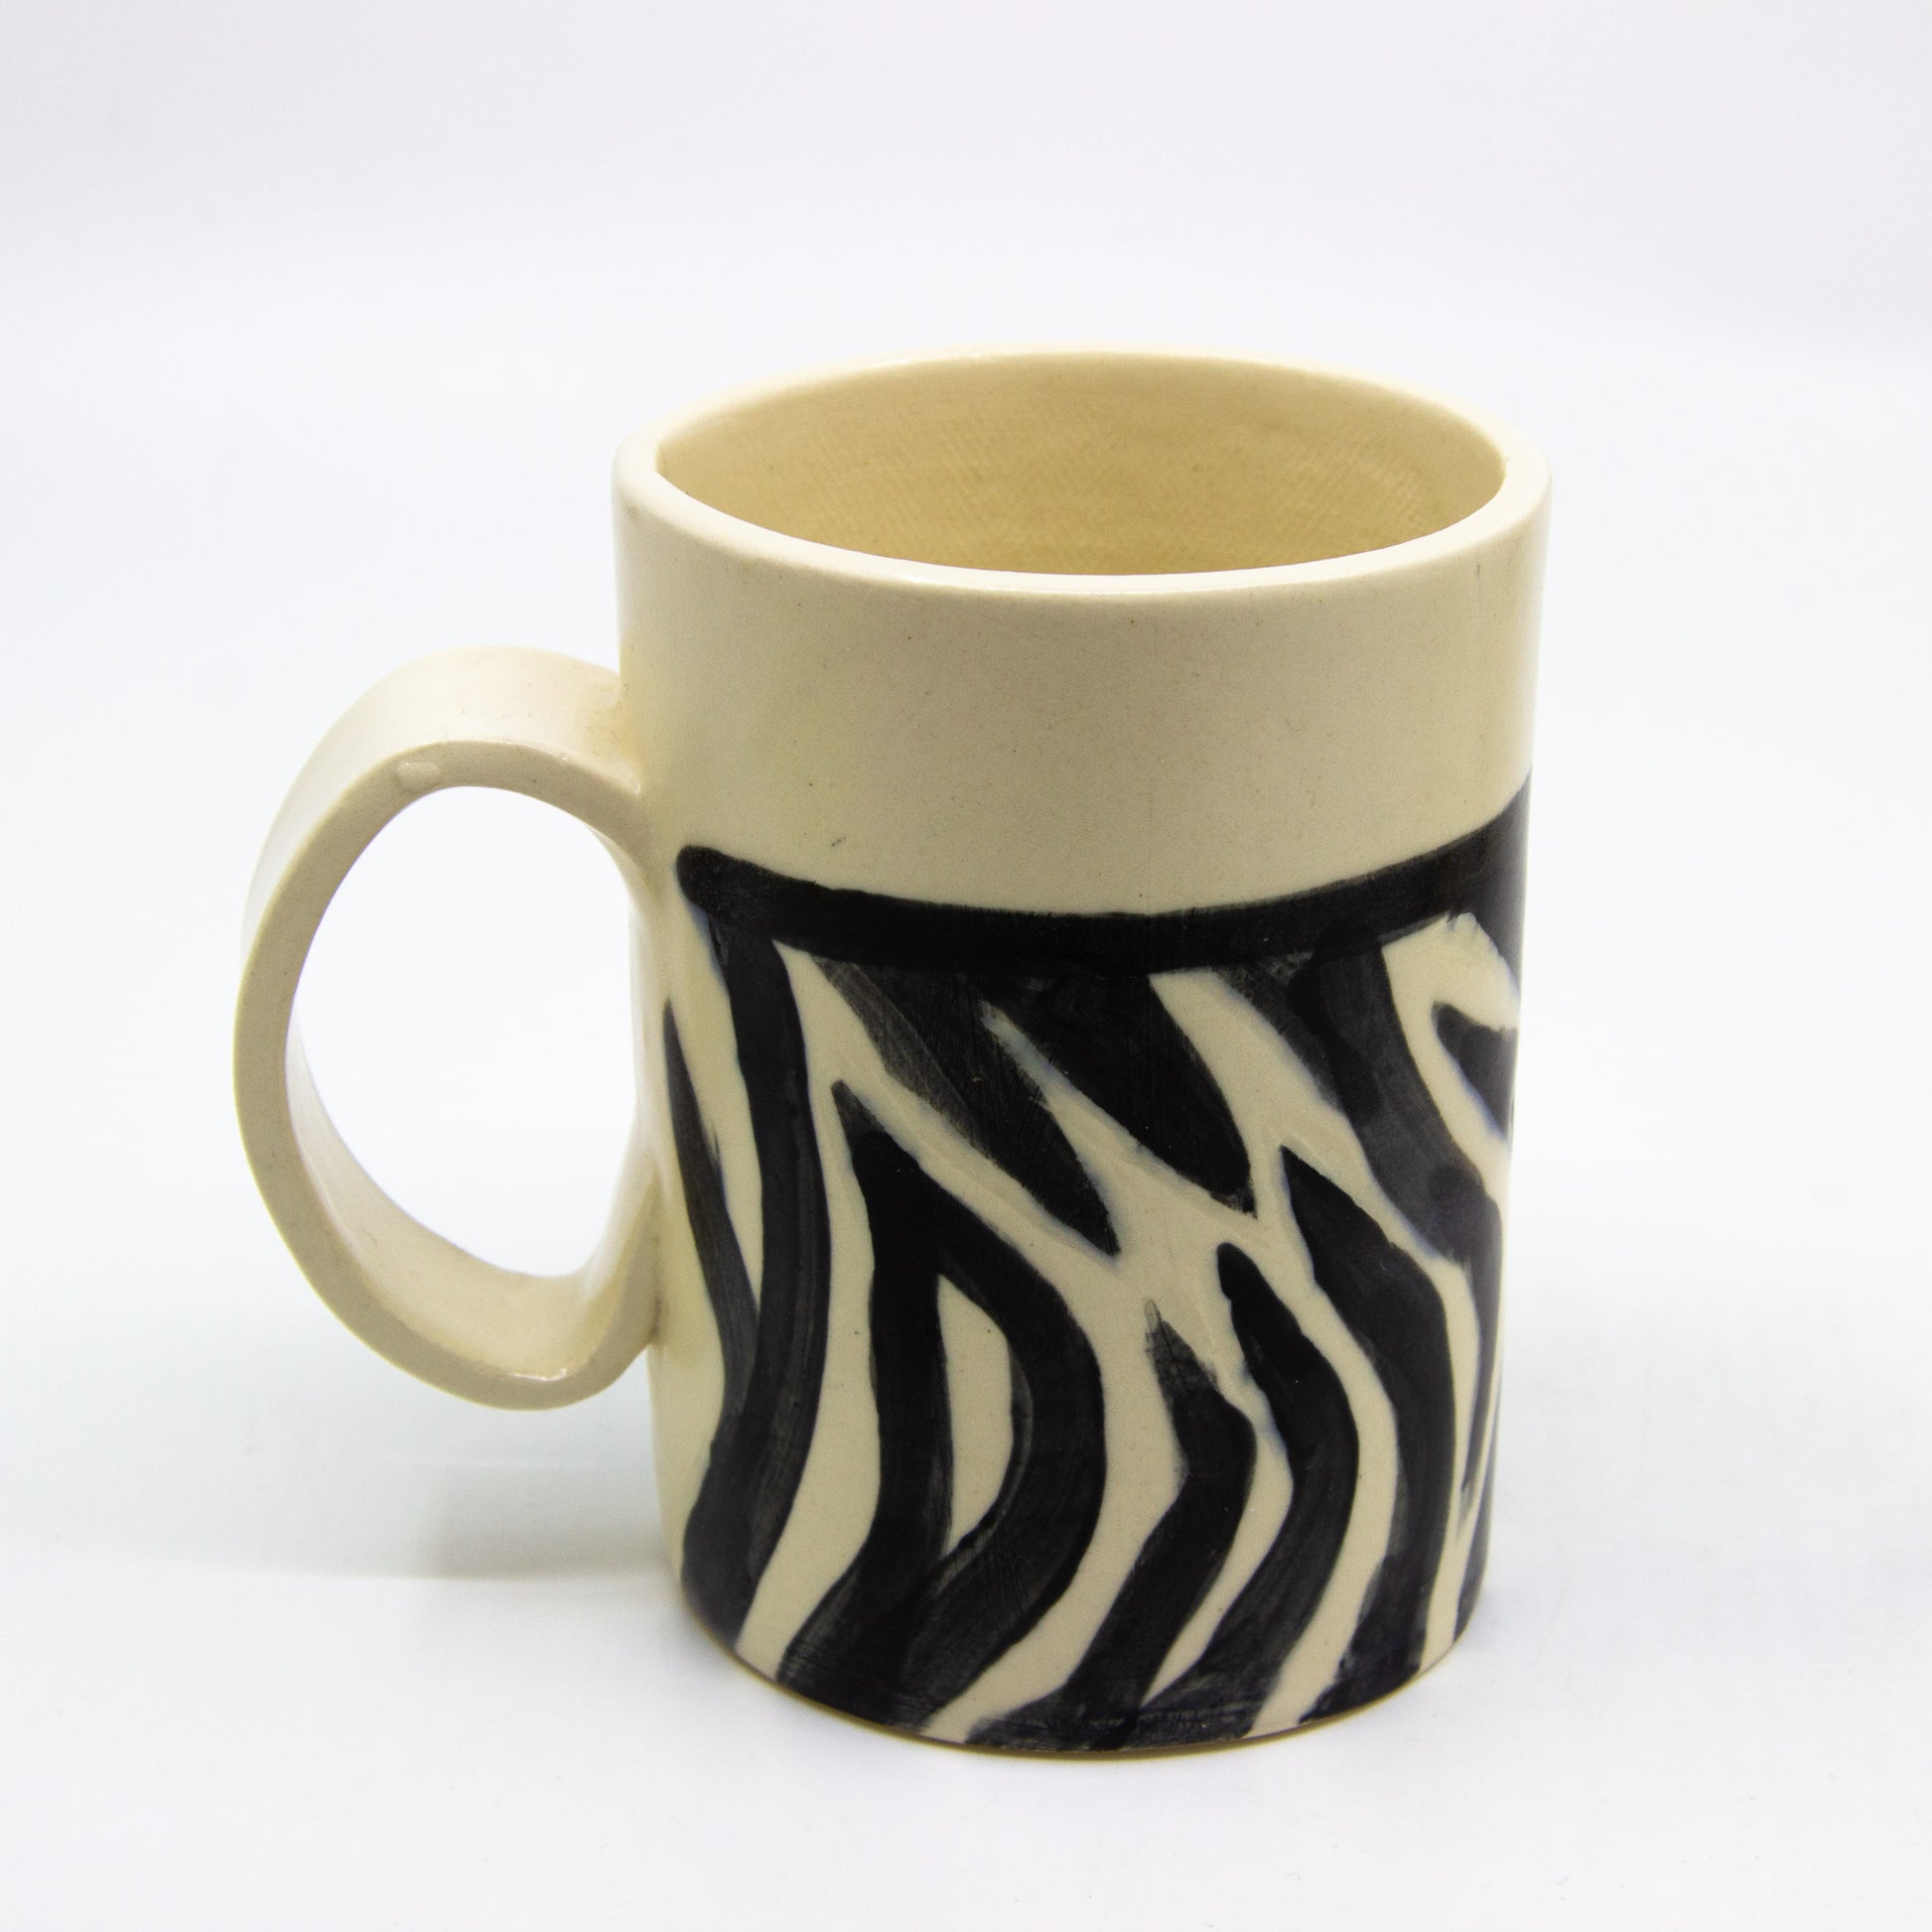 Black and white zebra mug